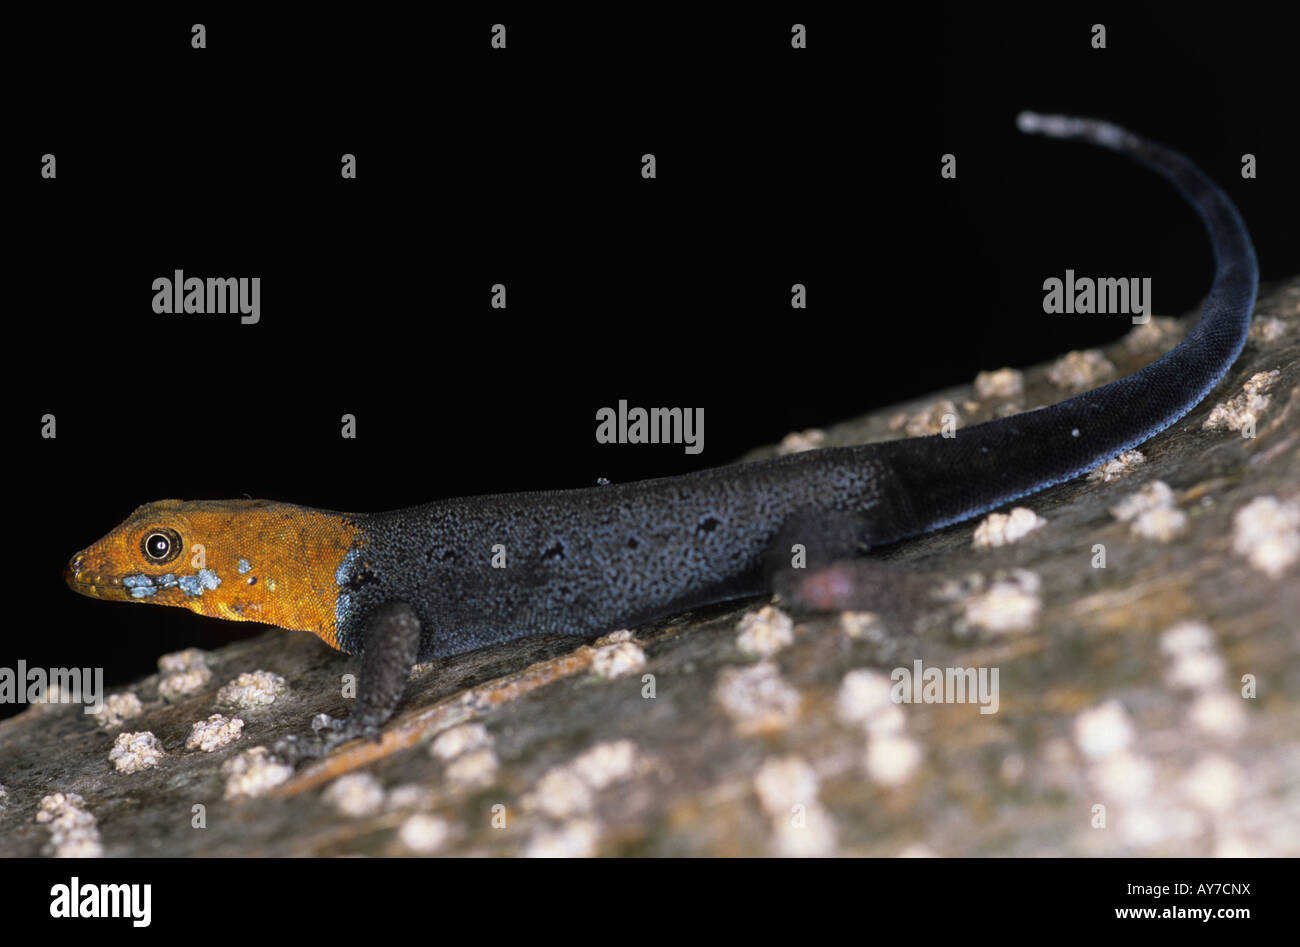 Yellow headed gecko Gonatodes albogularis Nicaragua Stock Photo